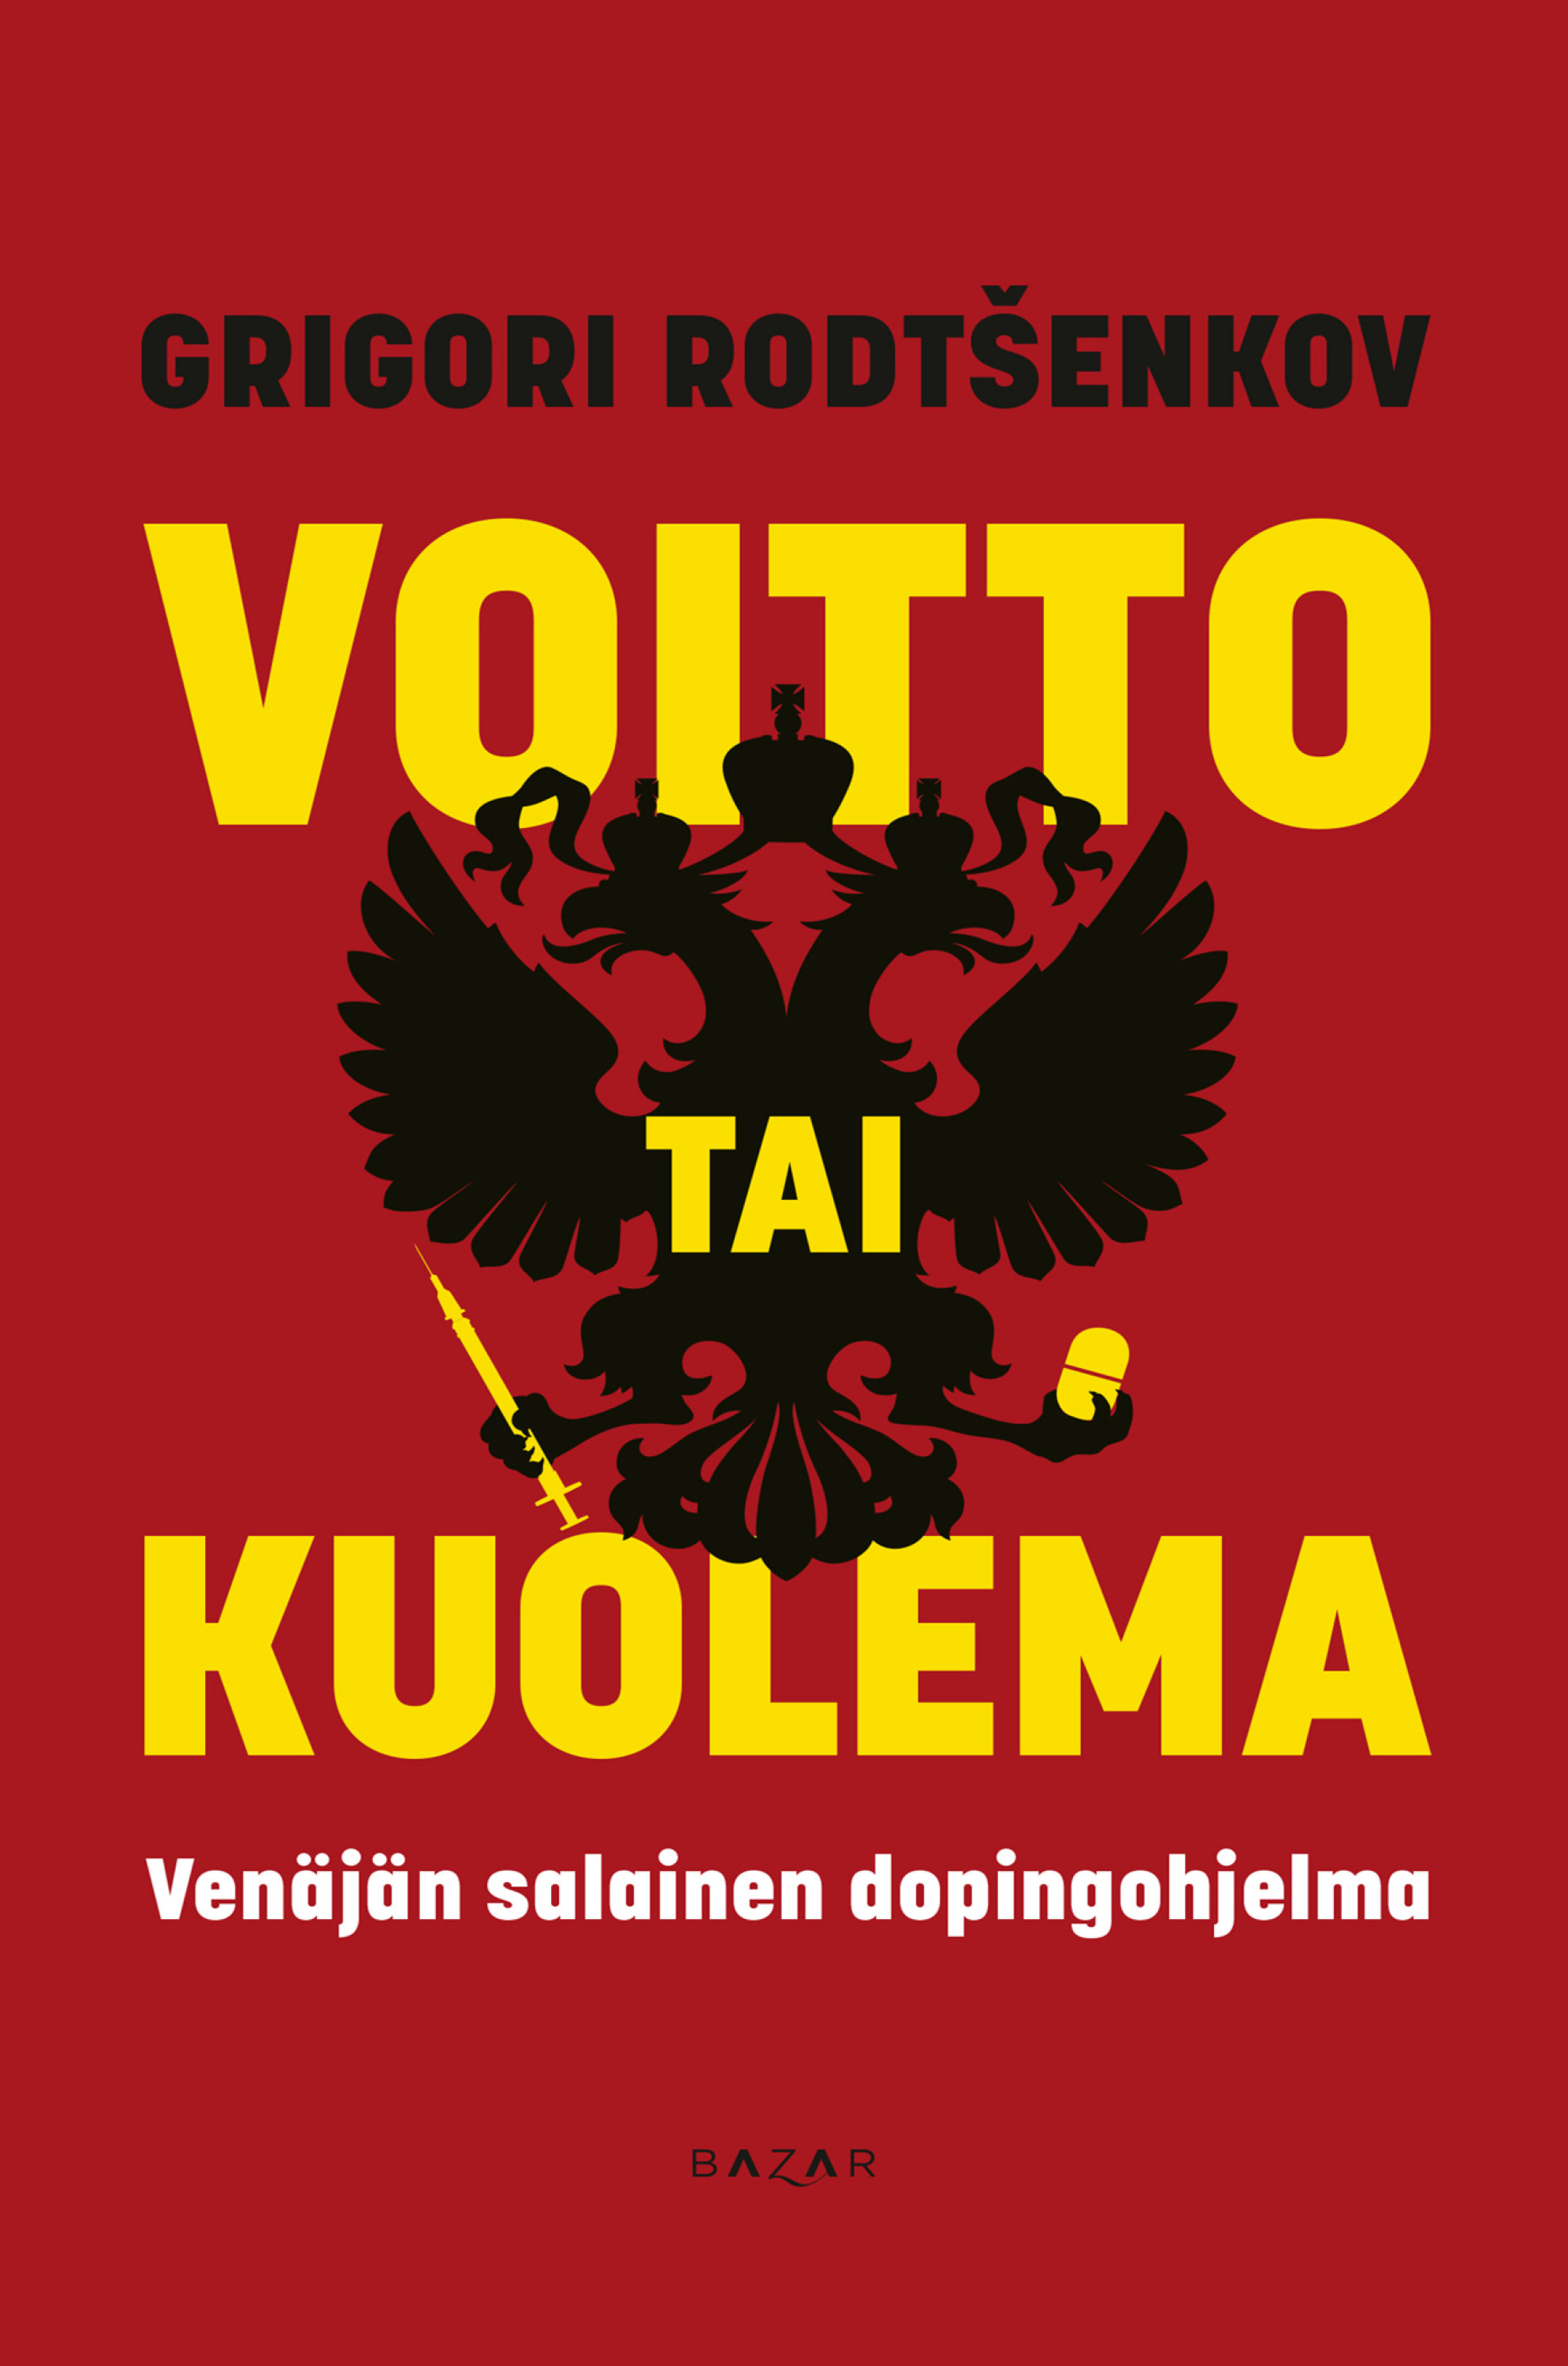 Rodtsenkov, Grigori - Voitto tai kuolema: Venäjän salainen dopingohjelma, ebook